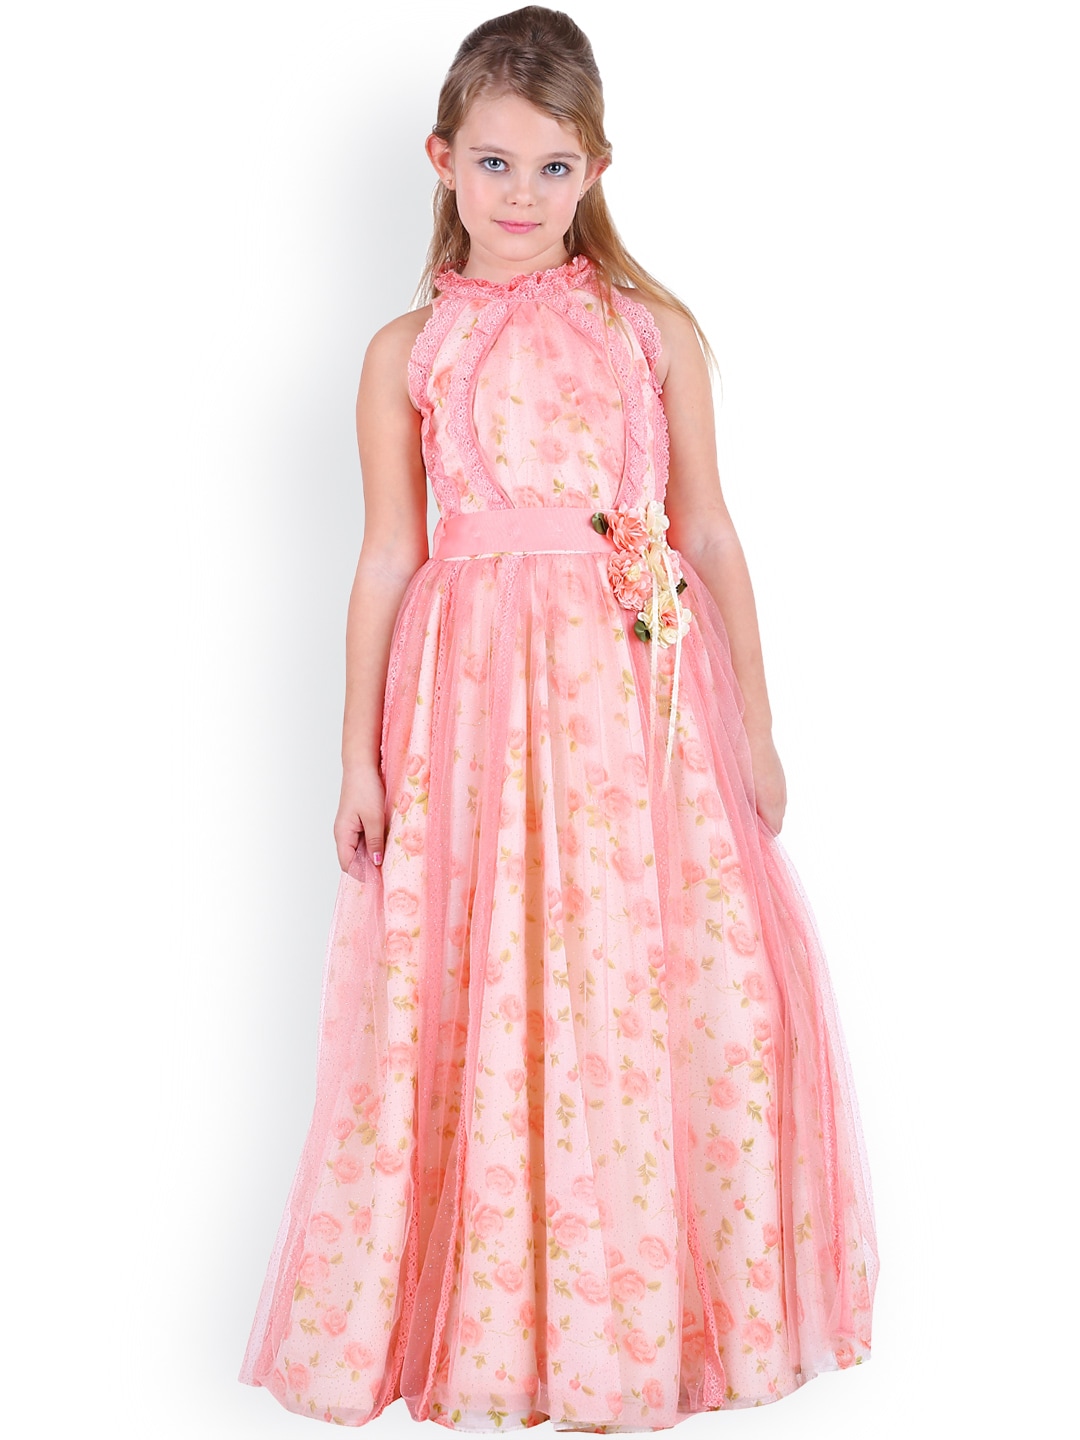 Dresses for Girls - Buy Girls&39 Dresses Online in India  Myntra